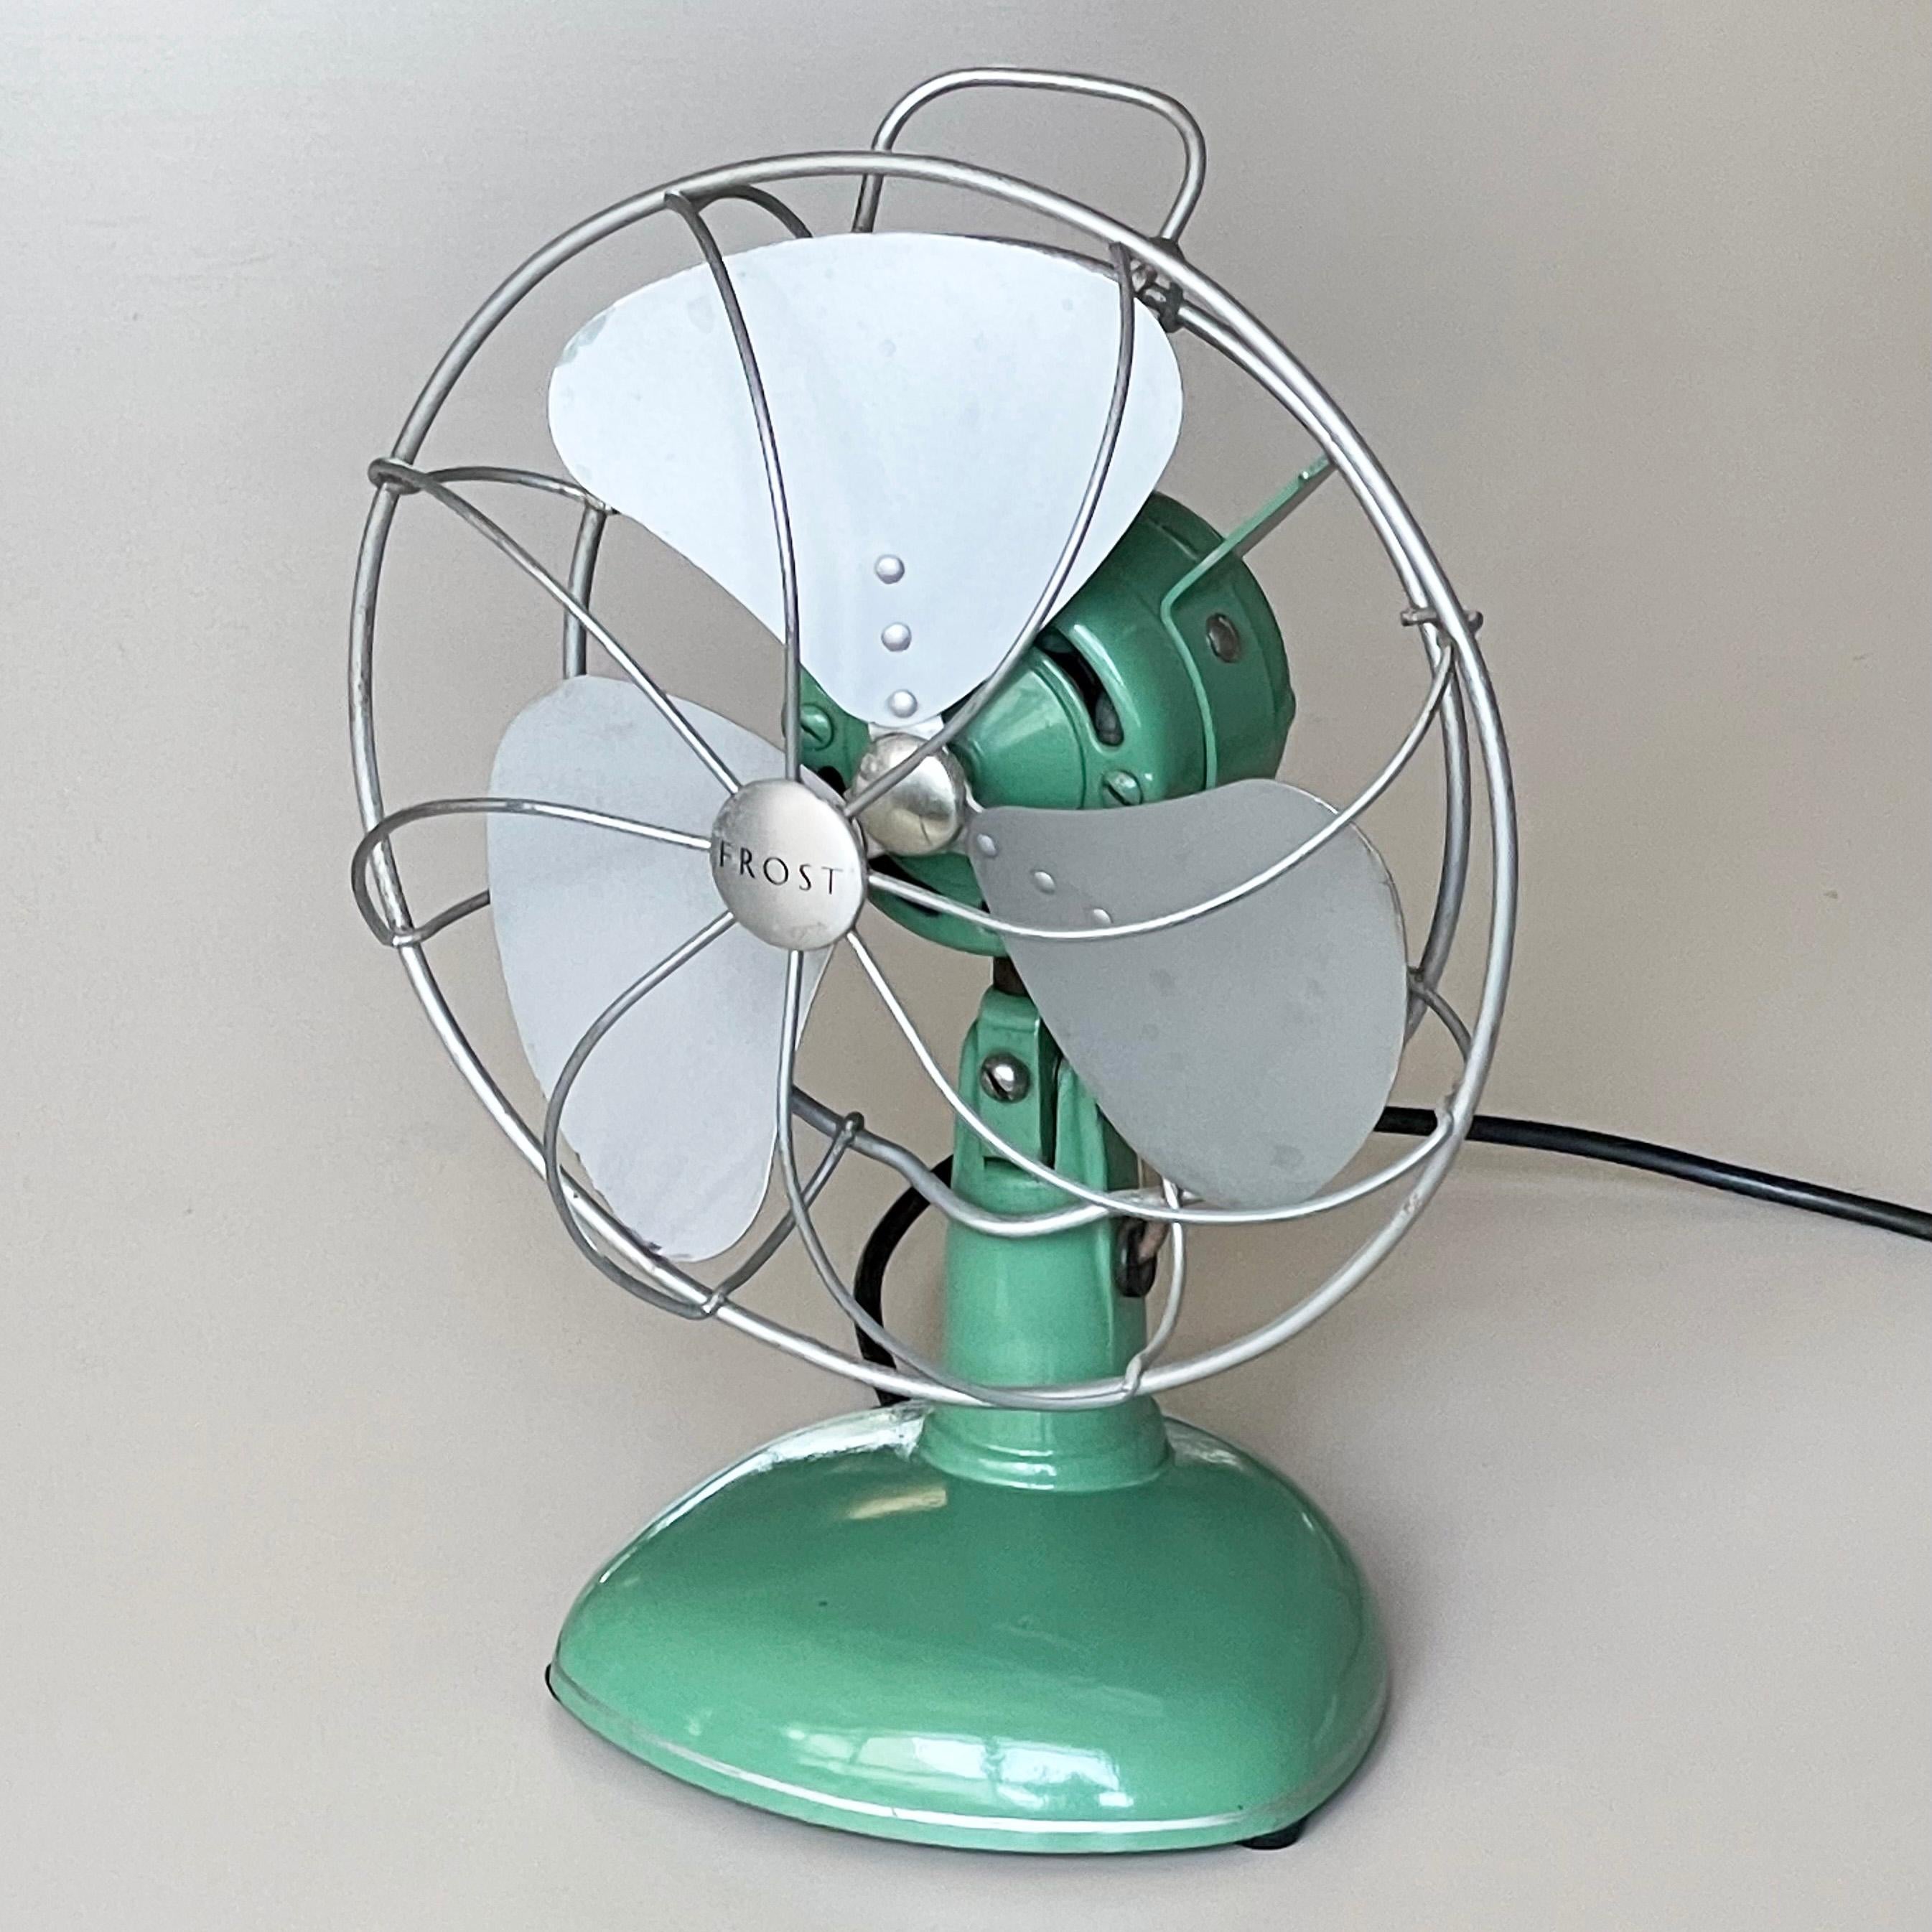 1950’s FROST triple blade oscillating desk fan / ventilator For Sale 6